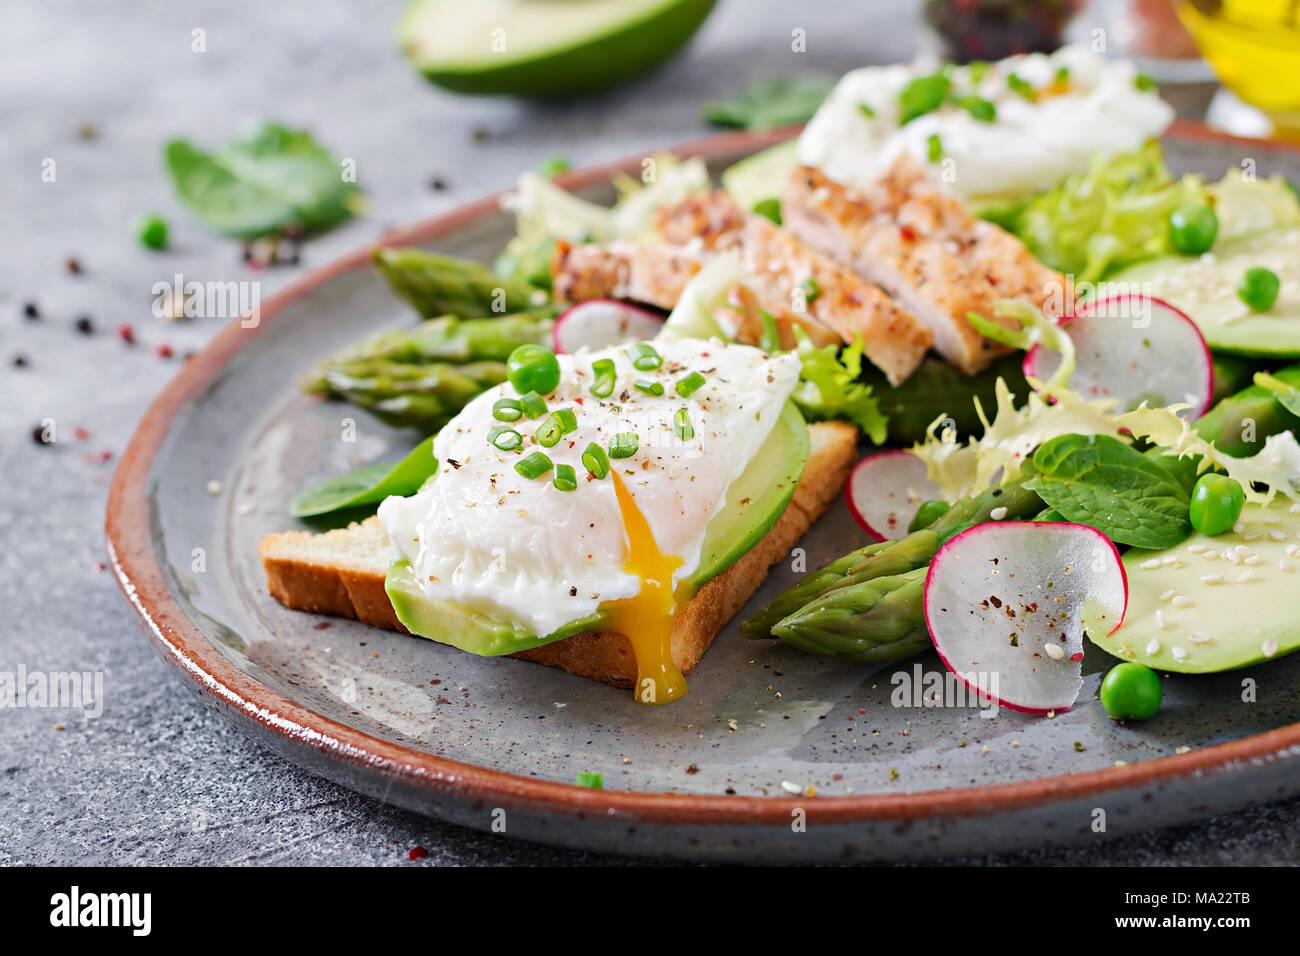 Una sana prima colazione. Uova in camicia su toast con avocado, asparagi e filetto di pollo alla griglia. Foto Stock